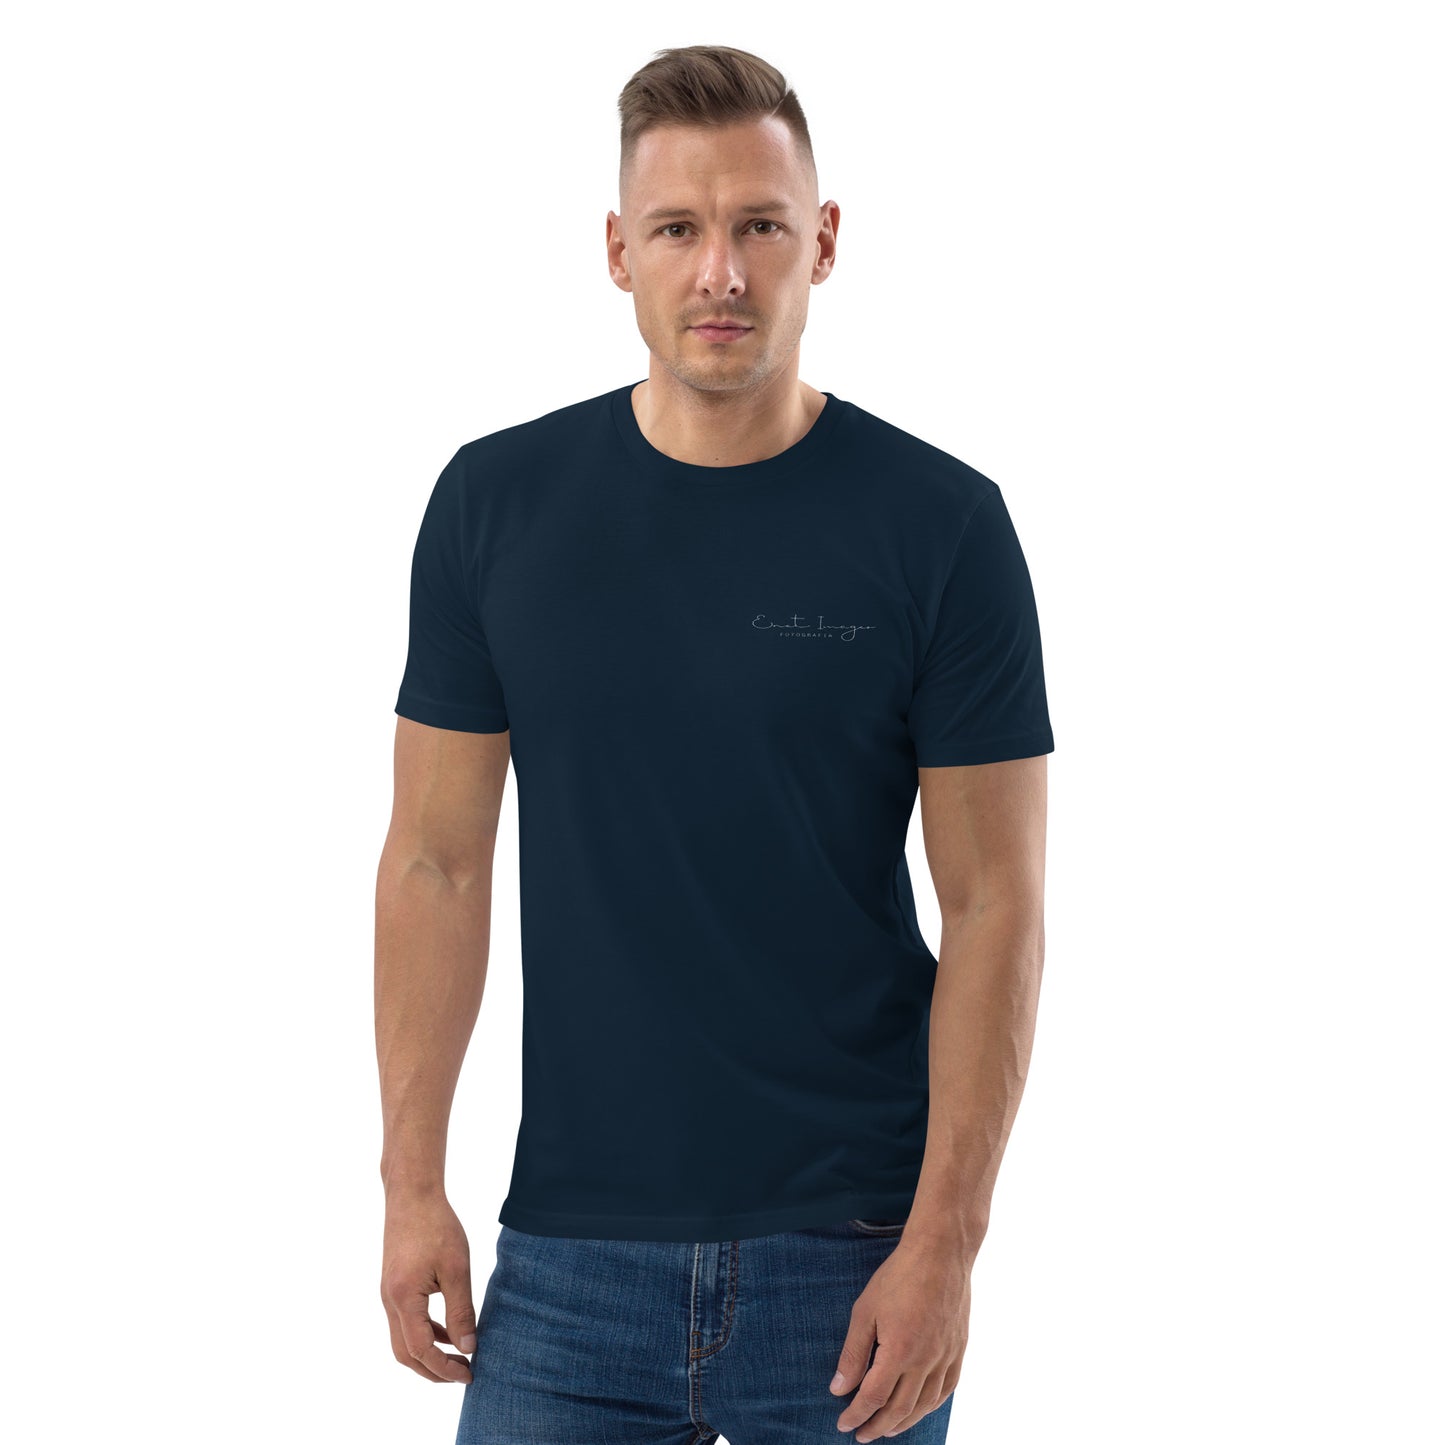 Unisex organic cotton t-shirt/Enet-Images